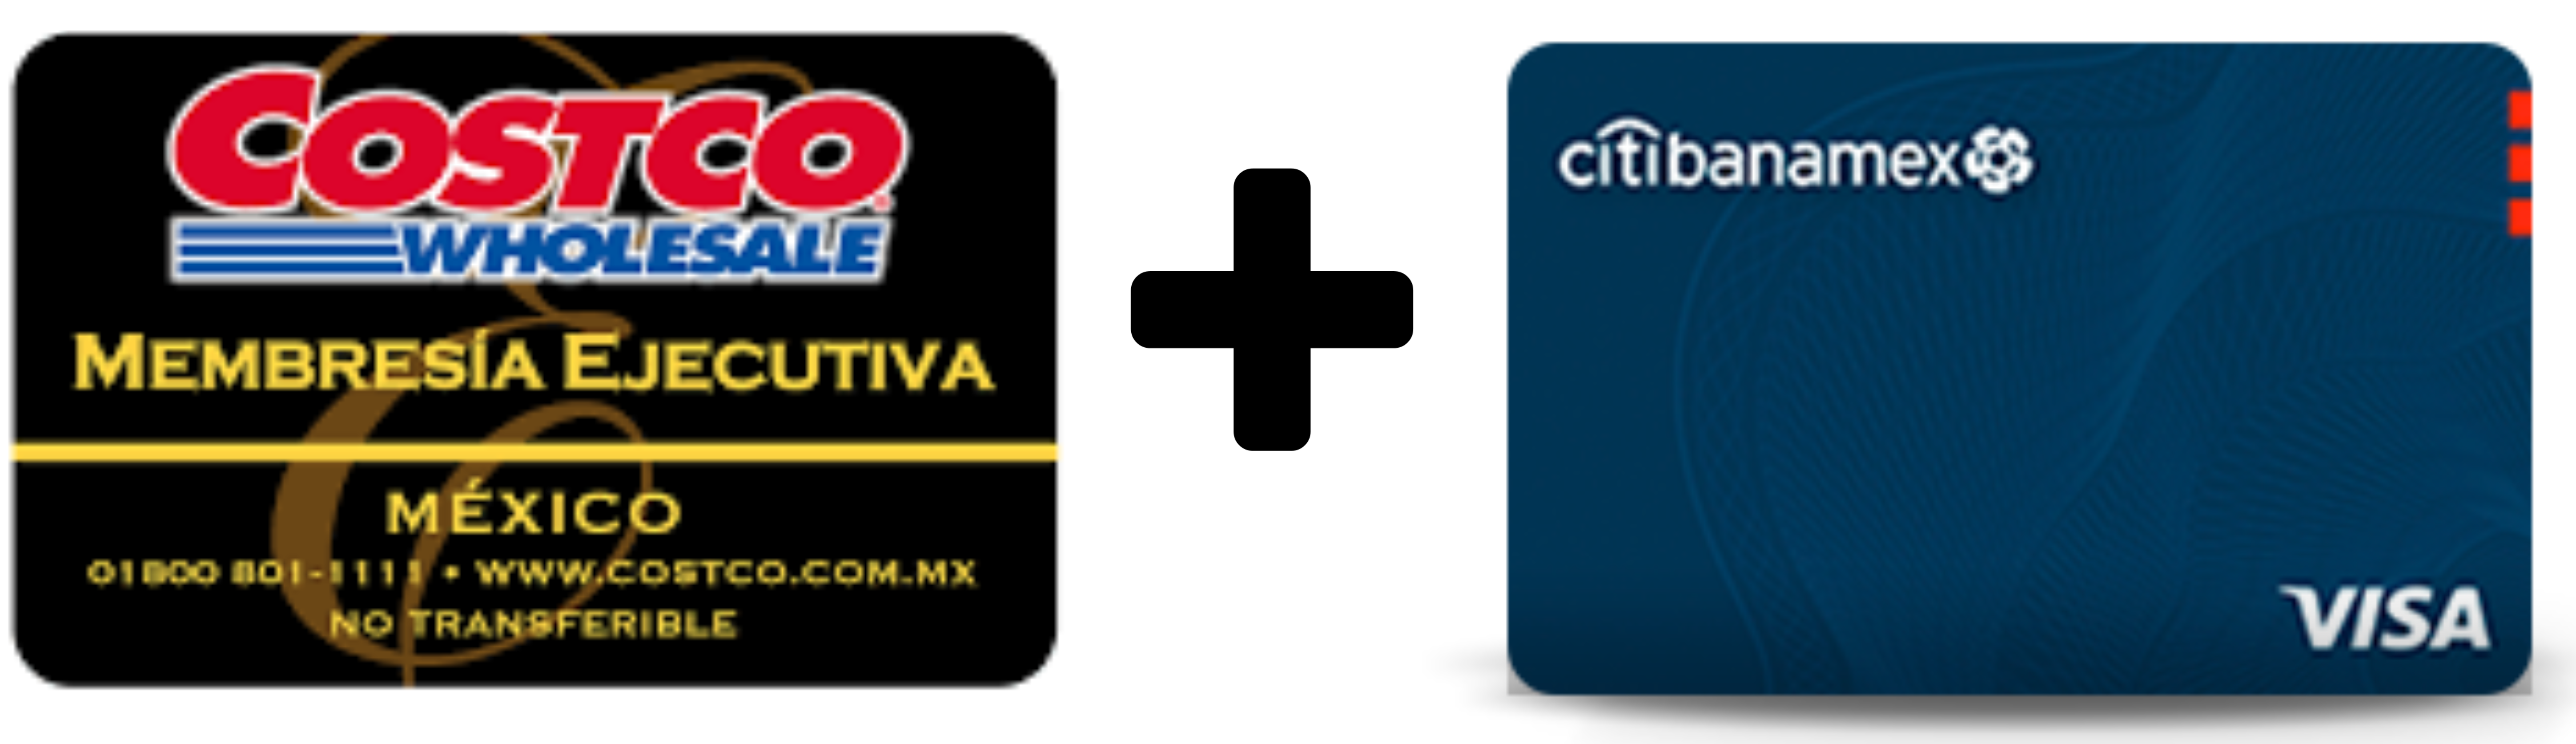 Tarjeta de Crédito Costco Citibanamex y Membresía Costco